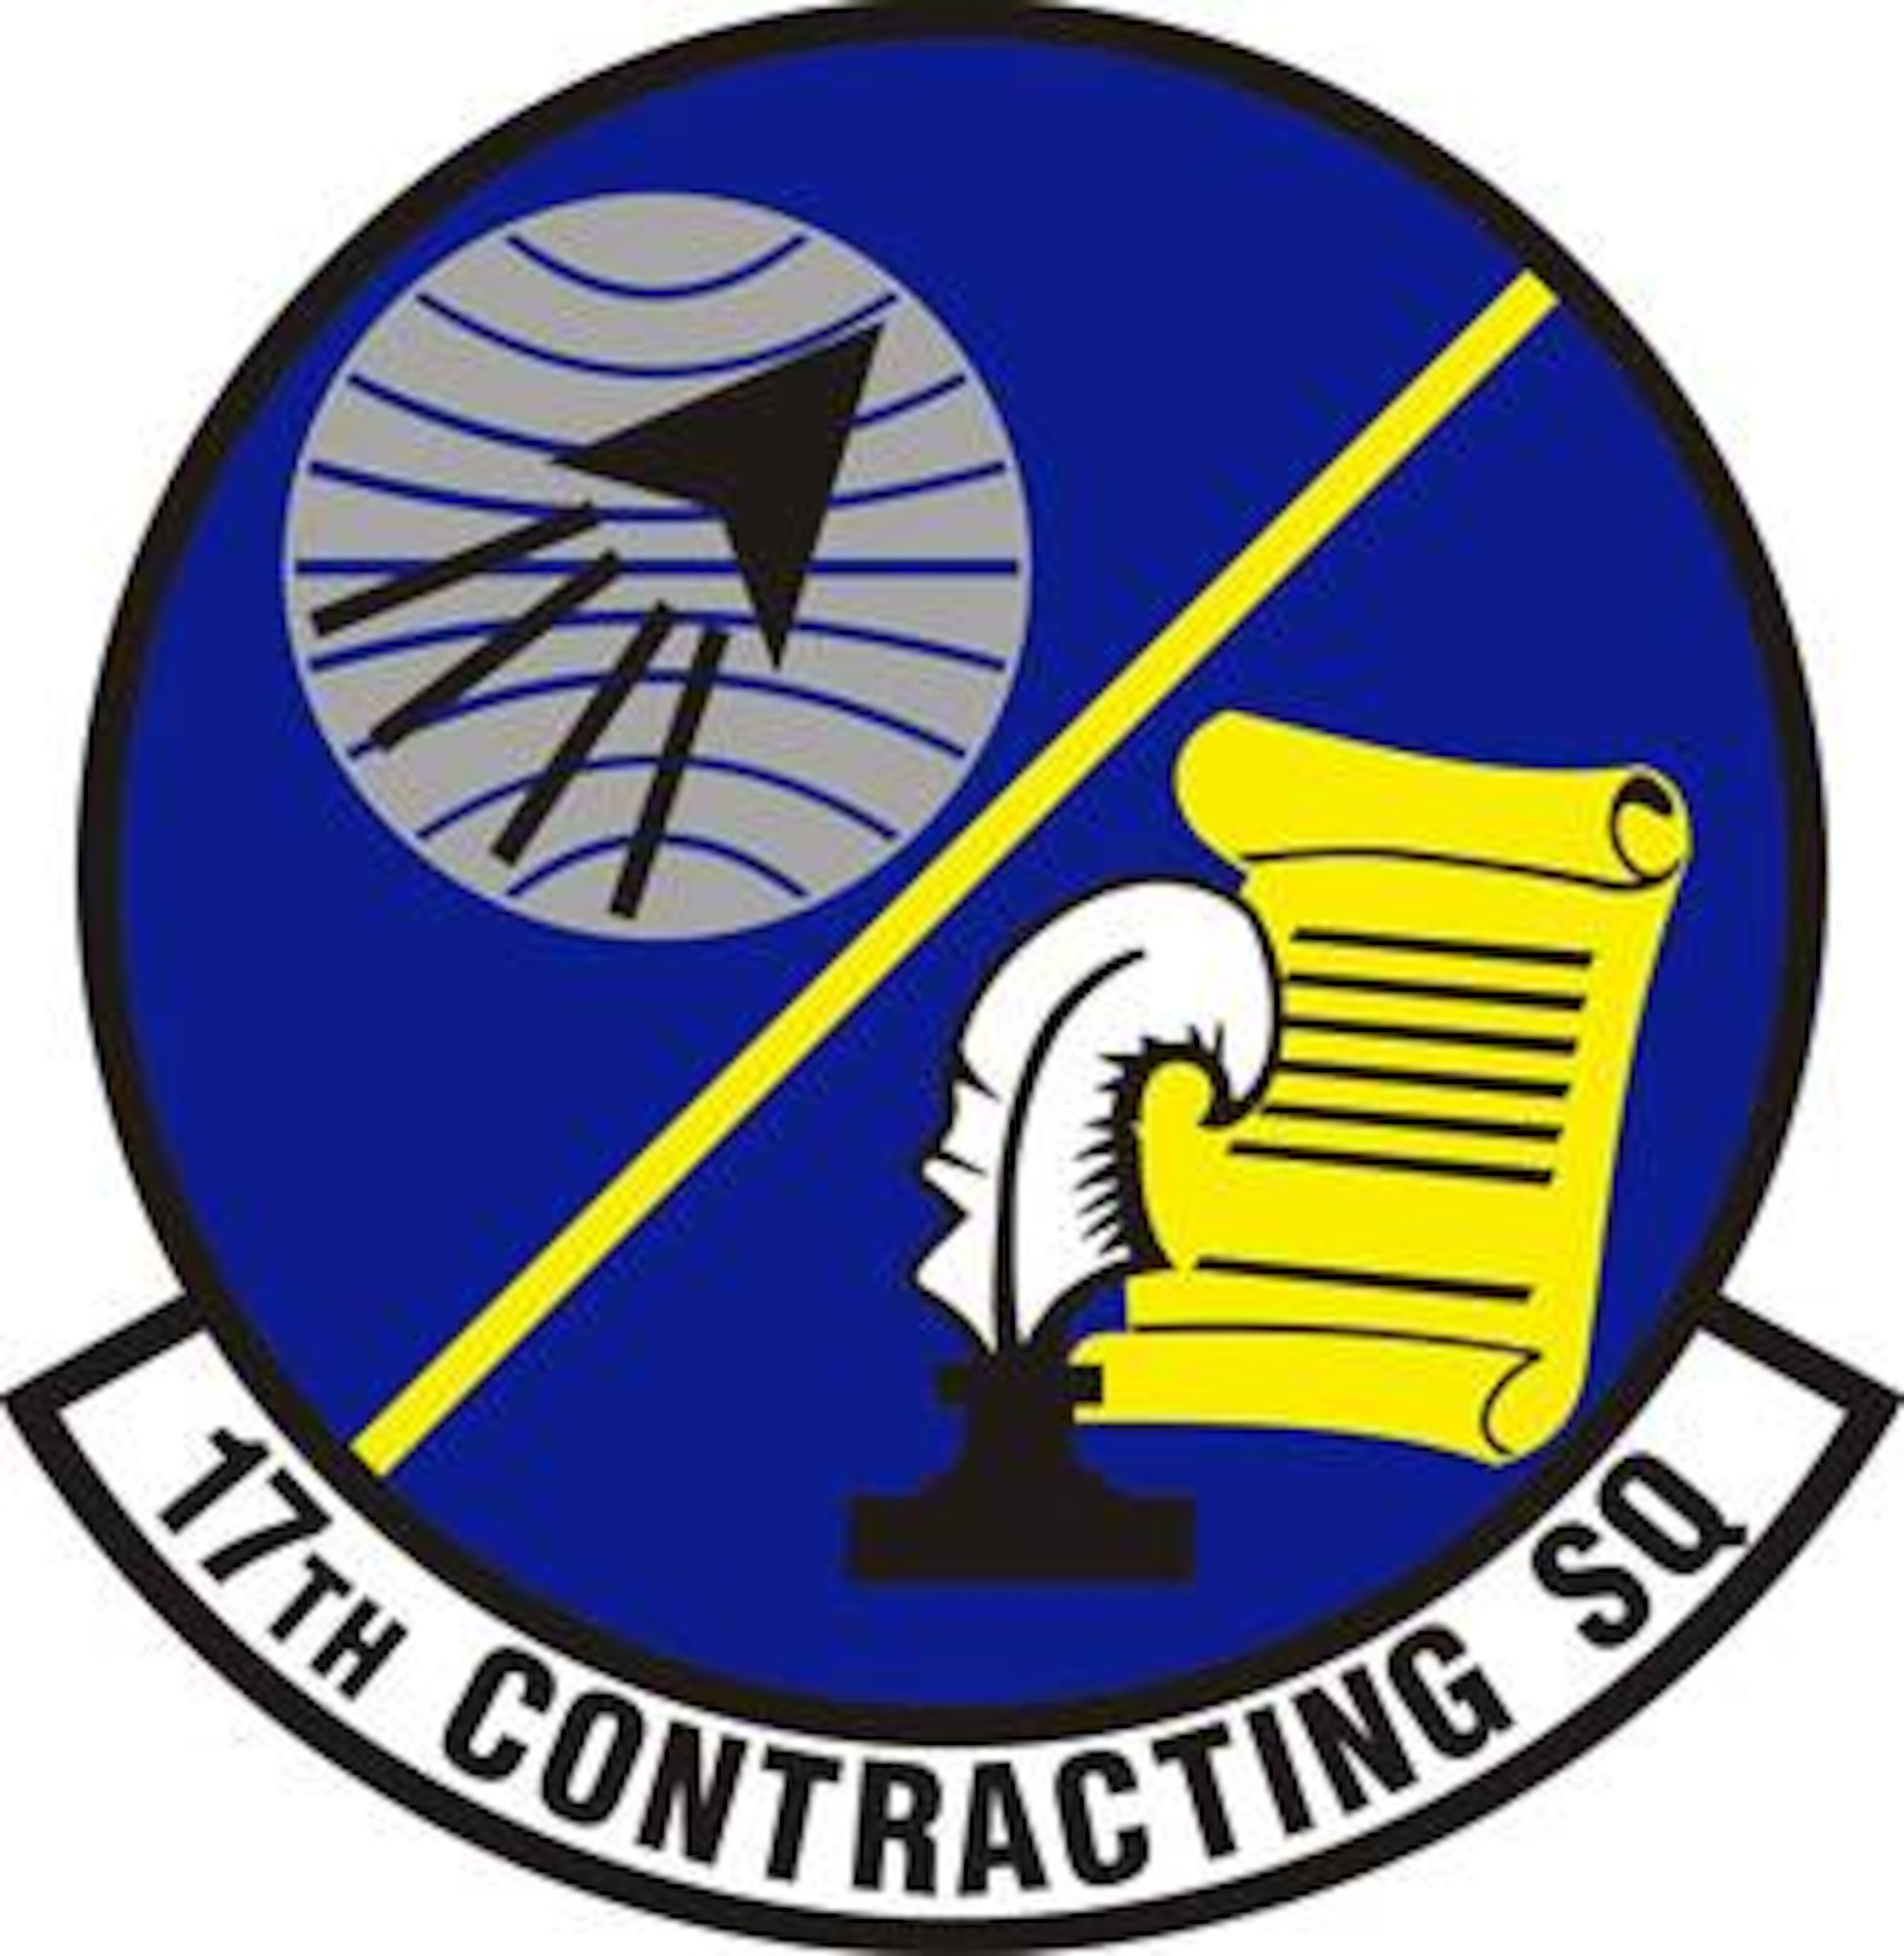 17th Contracting Squadron emblem